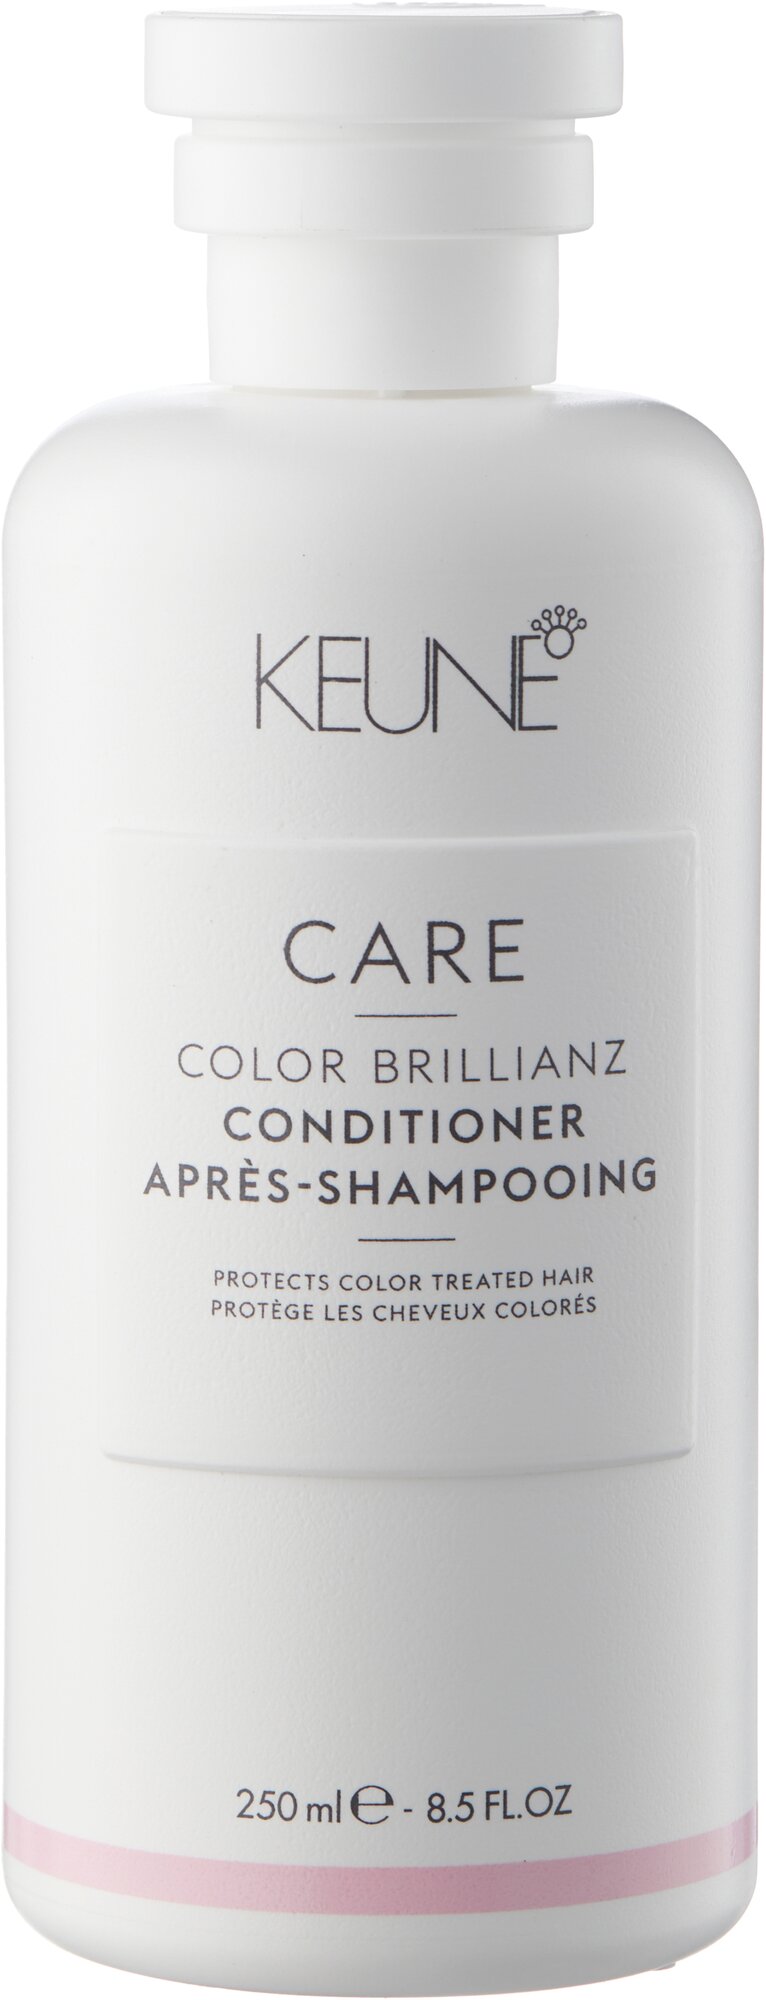 Keune Кондиционер "Яркость цвета" Color Brillianz Conditioner, 80 мл (Keune, ) - фото №1